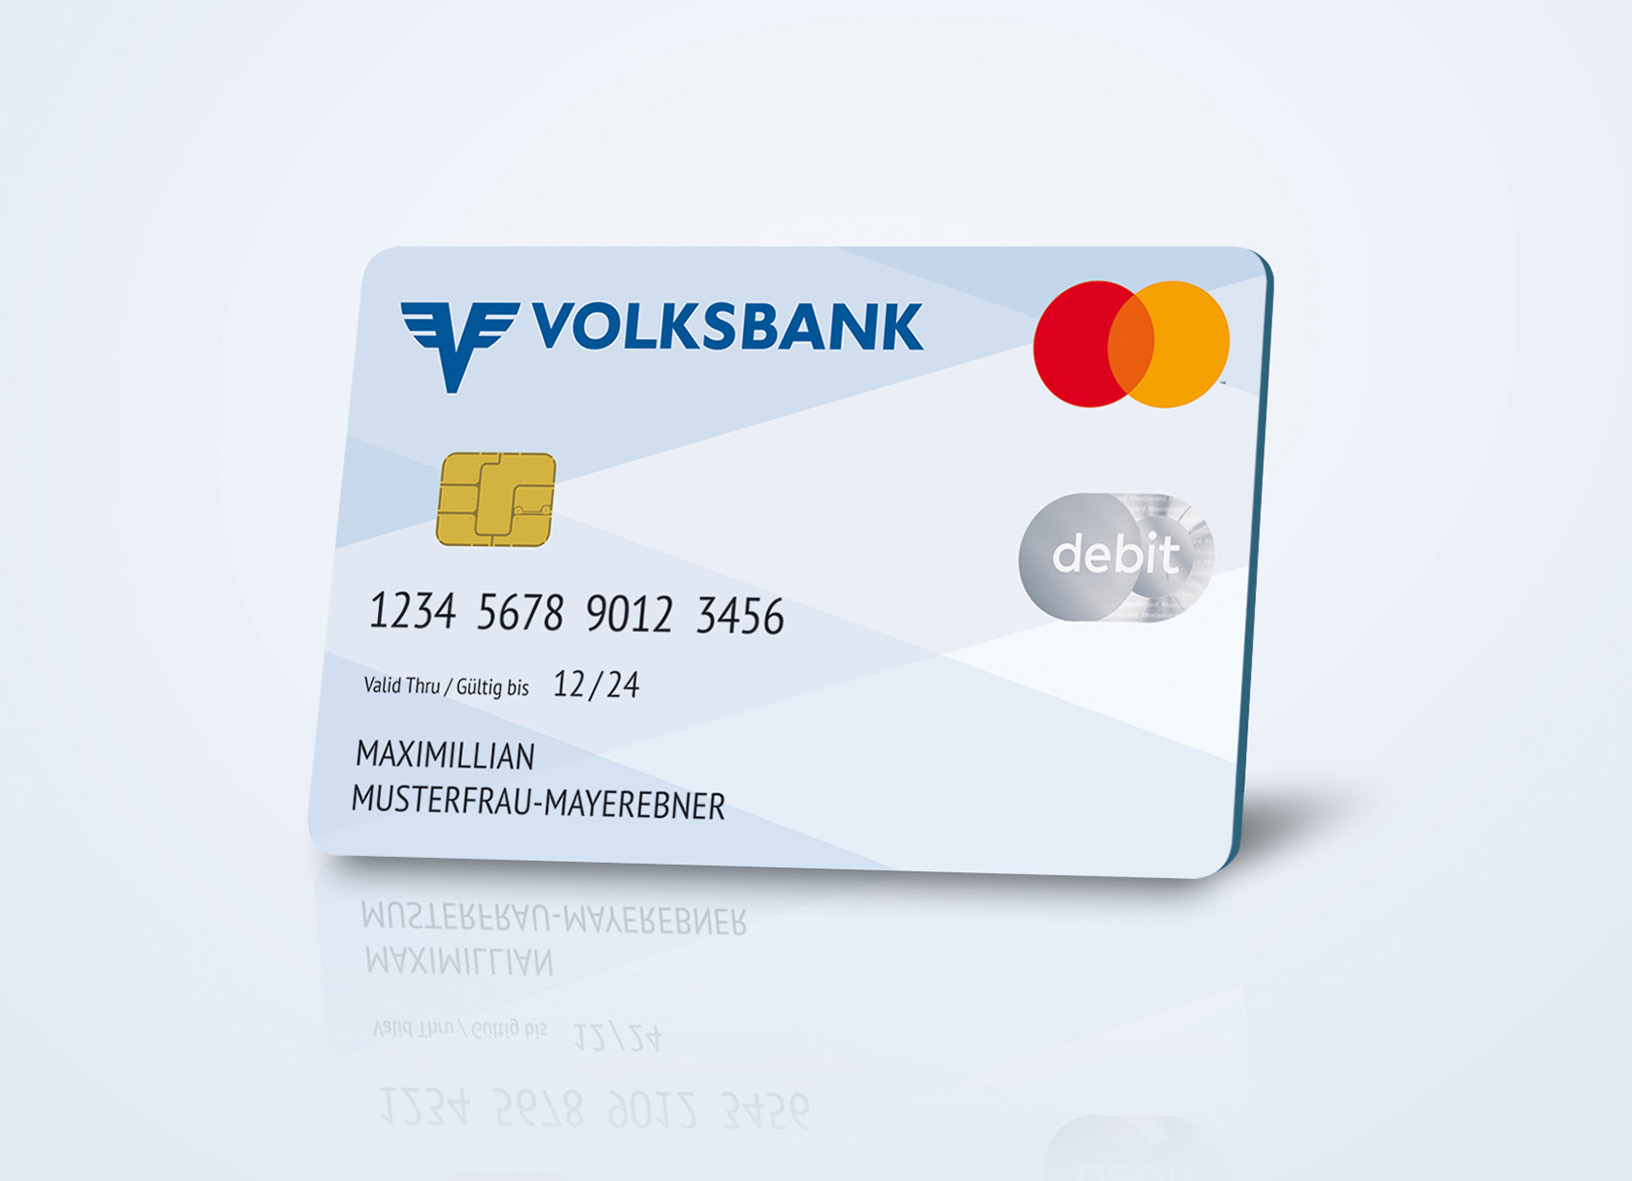 Die neue Debit Mastercard der Volksbank / Copyright: VOLKSBANK WIEN AG